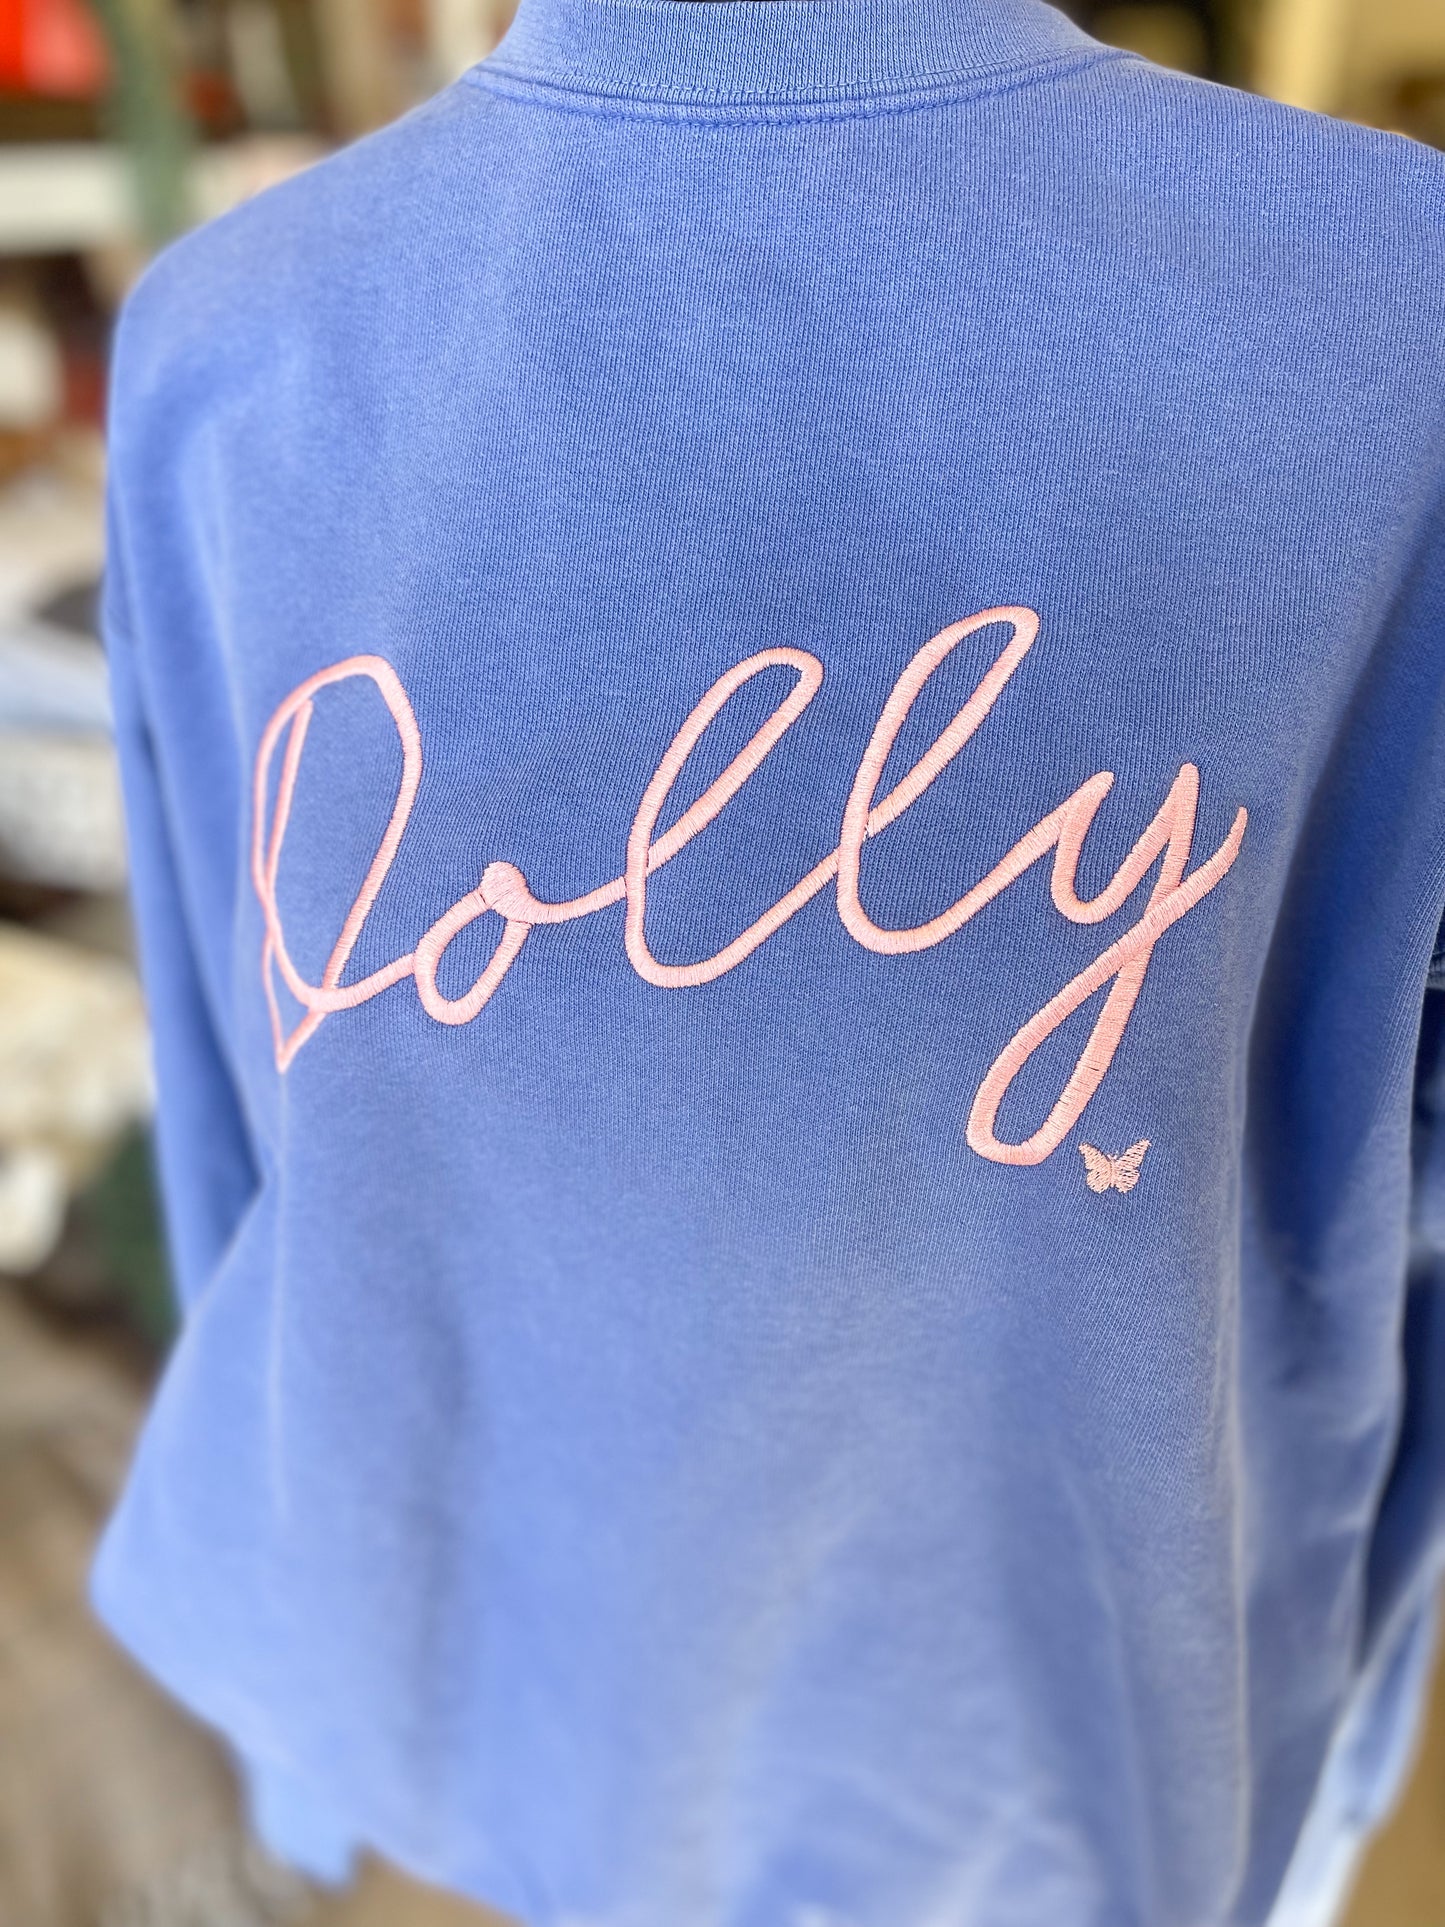 Dolly Sweatshirt